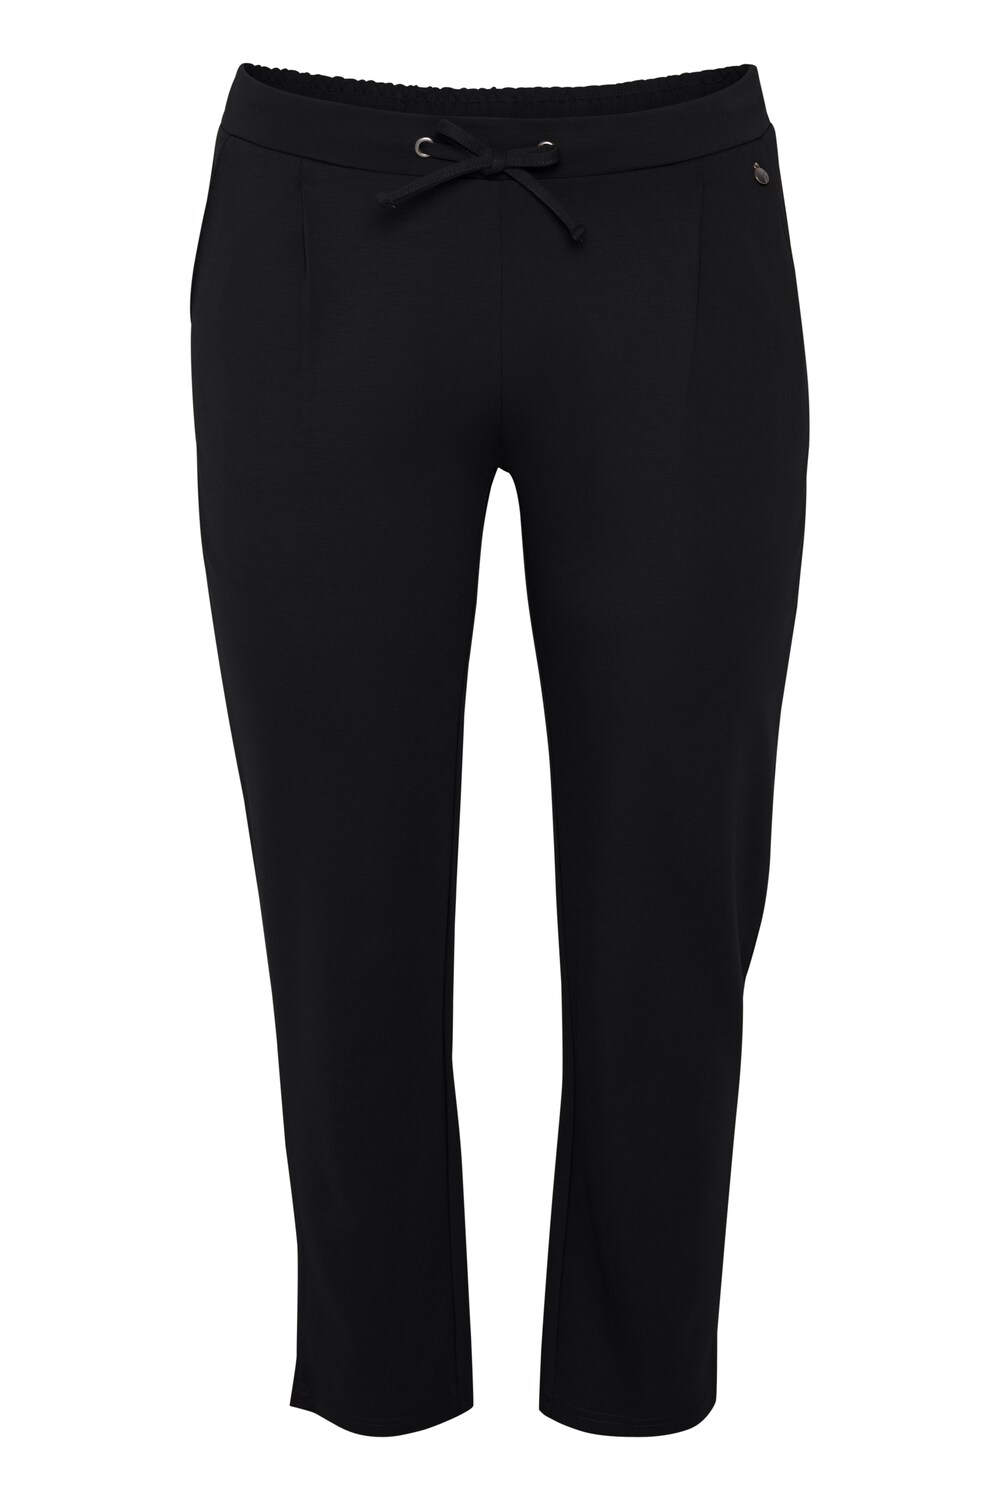 Узкие брюки со складками спереди Fransa Curve STRETCH, черный платье fransa frfanemma черный